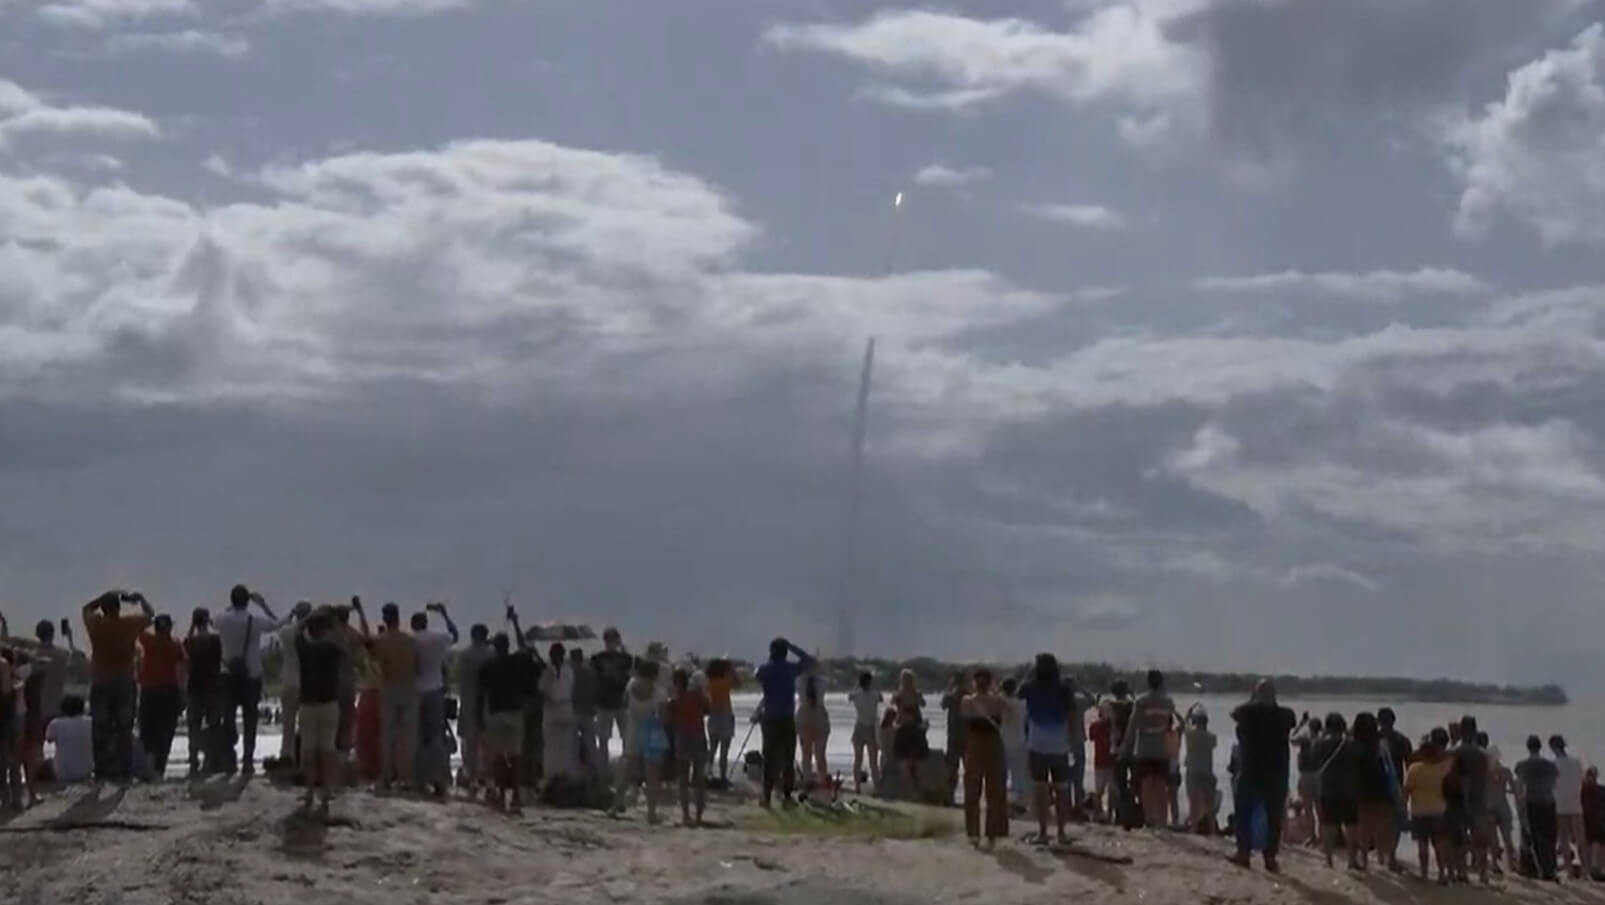 Верхняя ступень ракеты «Ариан-6». Зрители наблюдают за взлетом ракеты «Ариан-6». Источник: space.com. Фото.